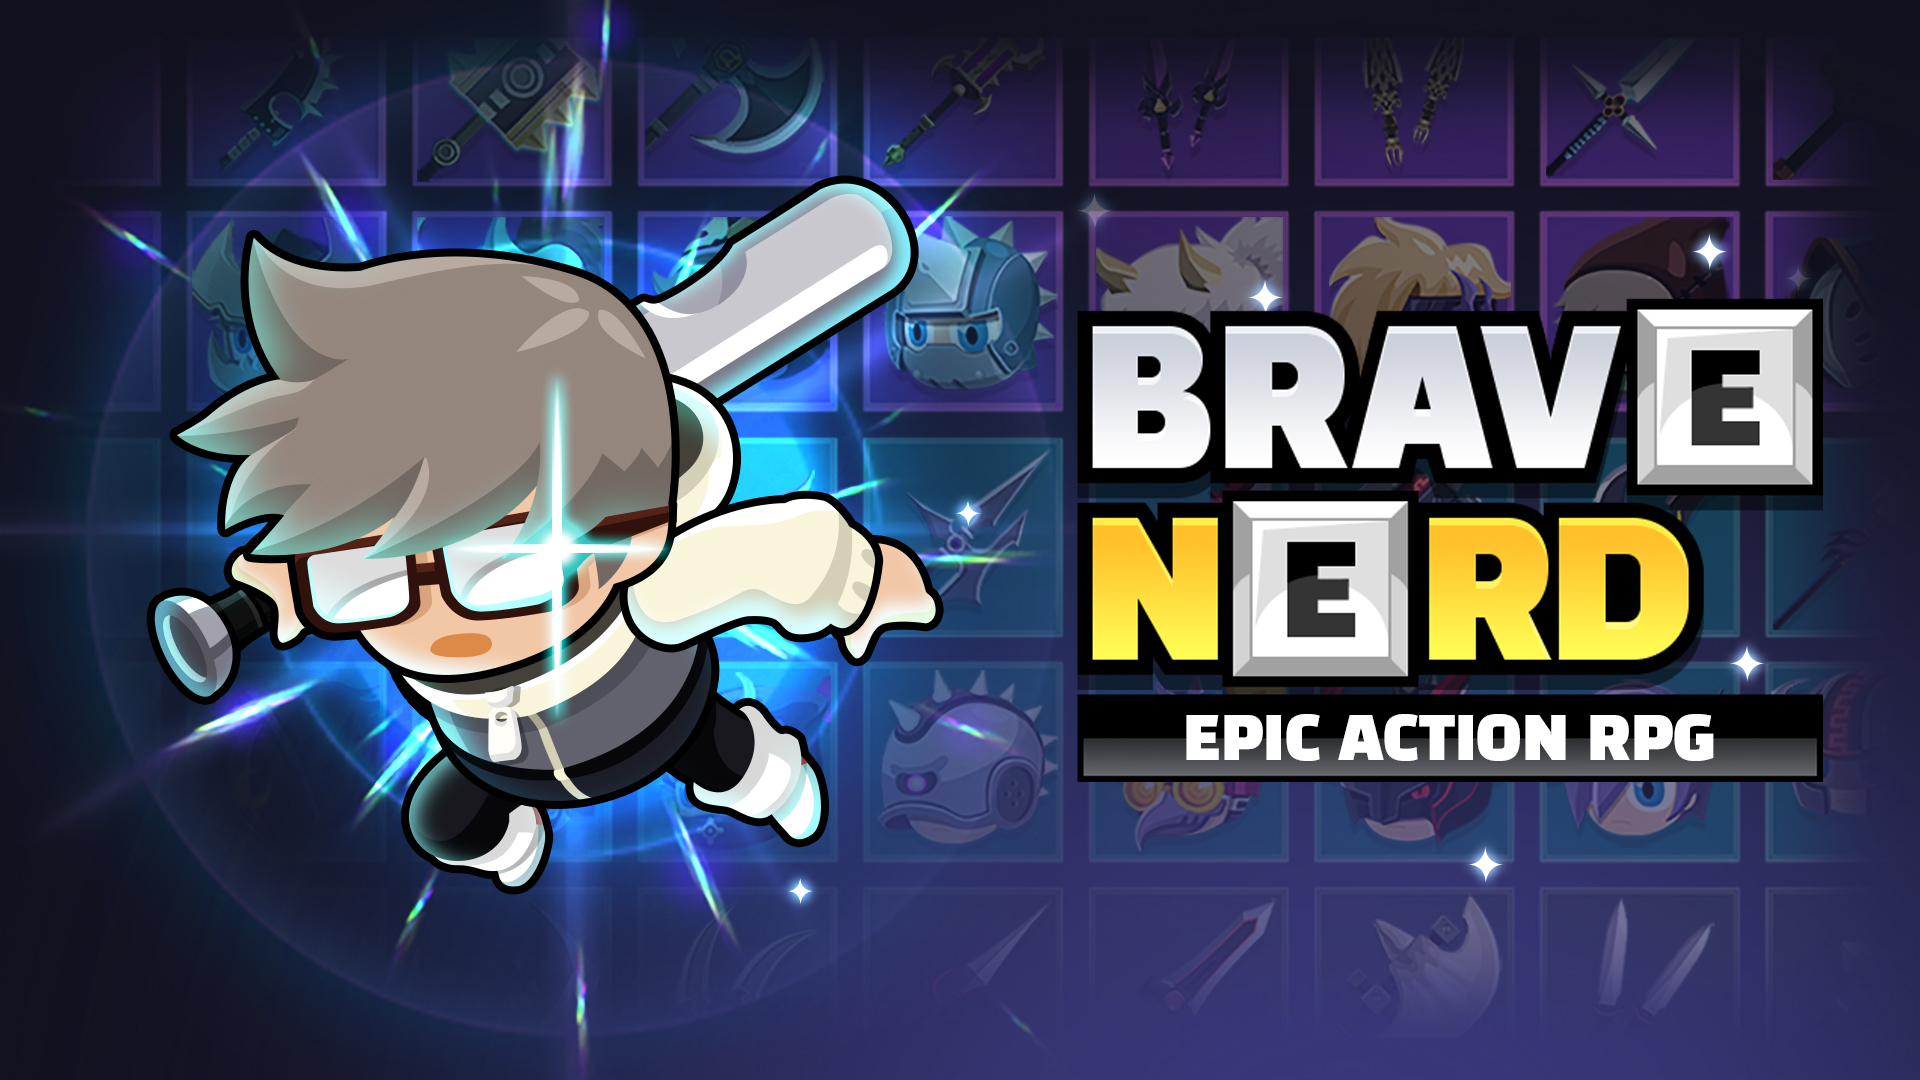 Download The Brave Nerd für Android kostenlos.